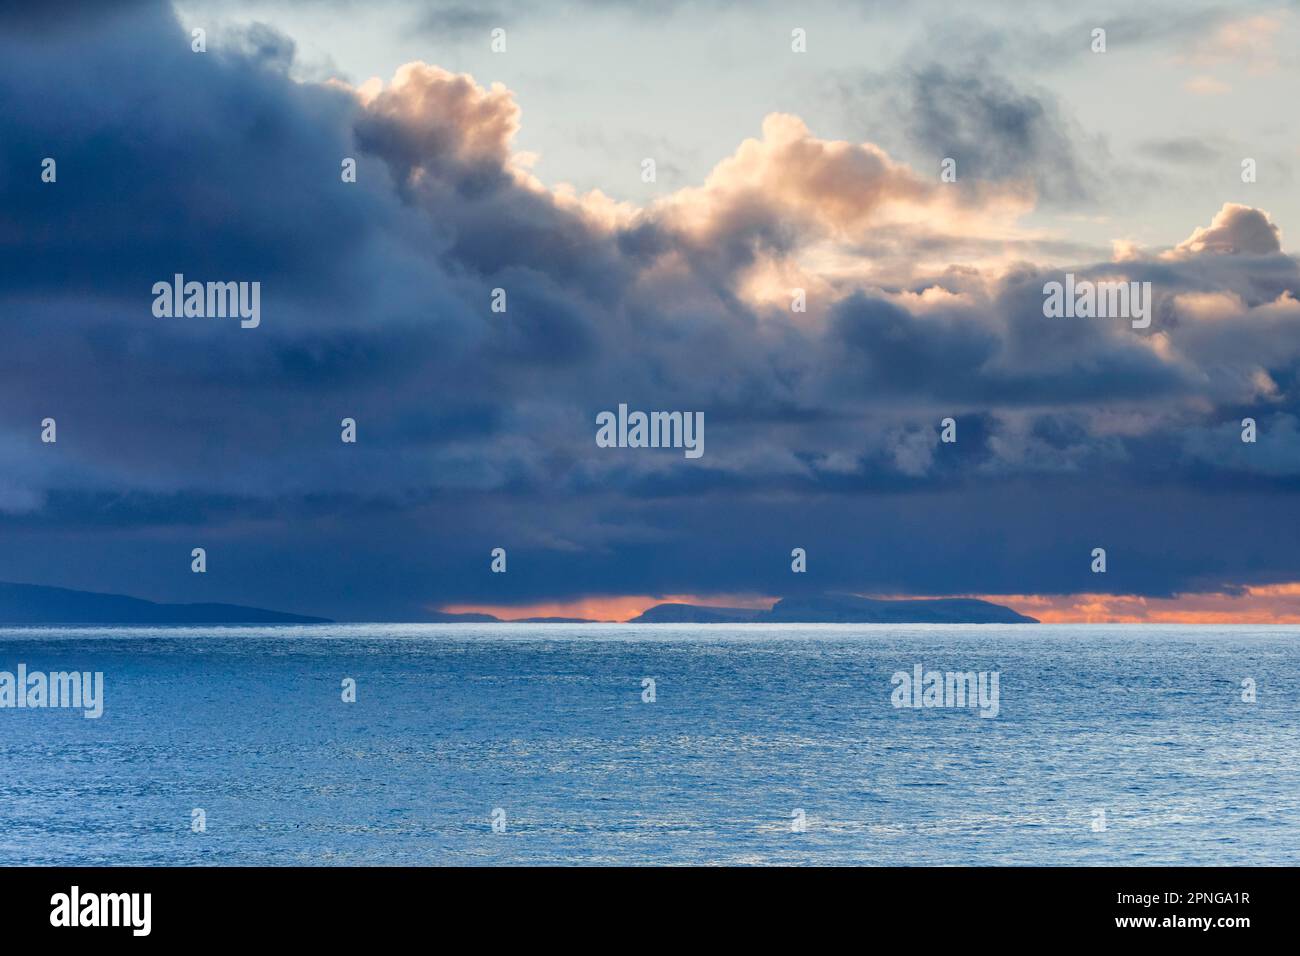 Tief liegende Regenwolken treiben über die Sommerinseln und das offene Wasser des blauen Atlantiks, der Westküste Schottlands Stockfoto